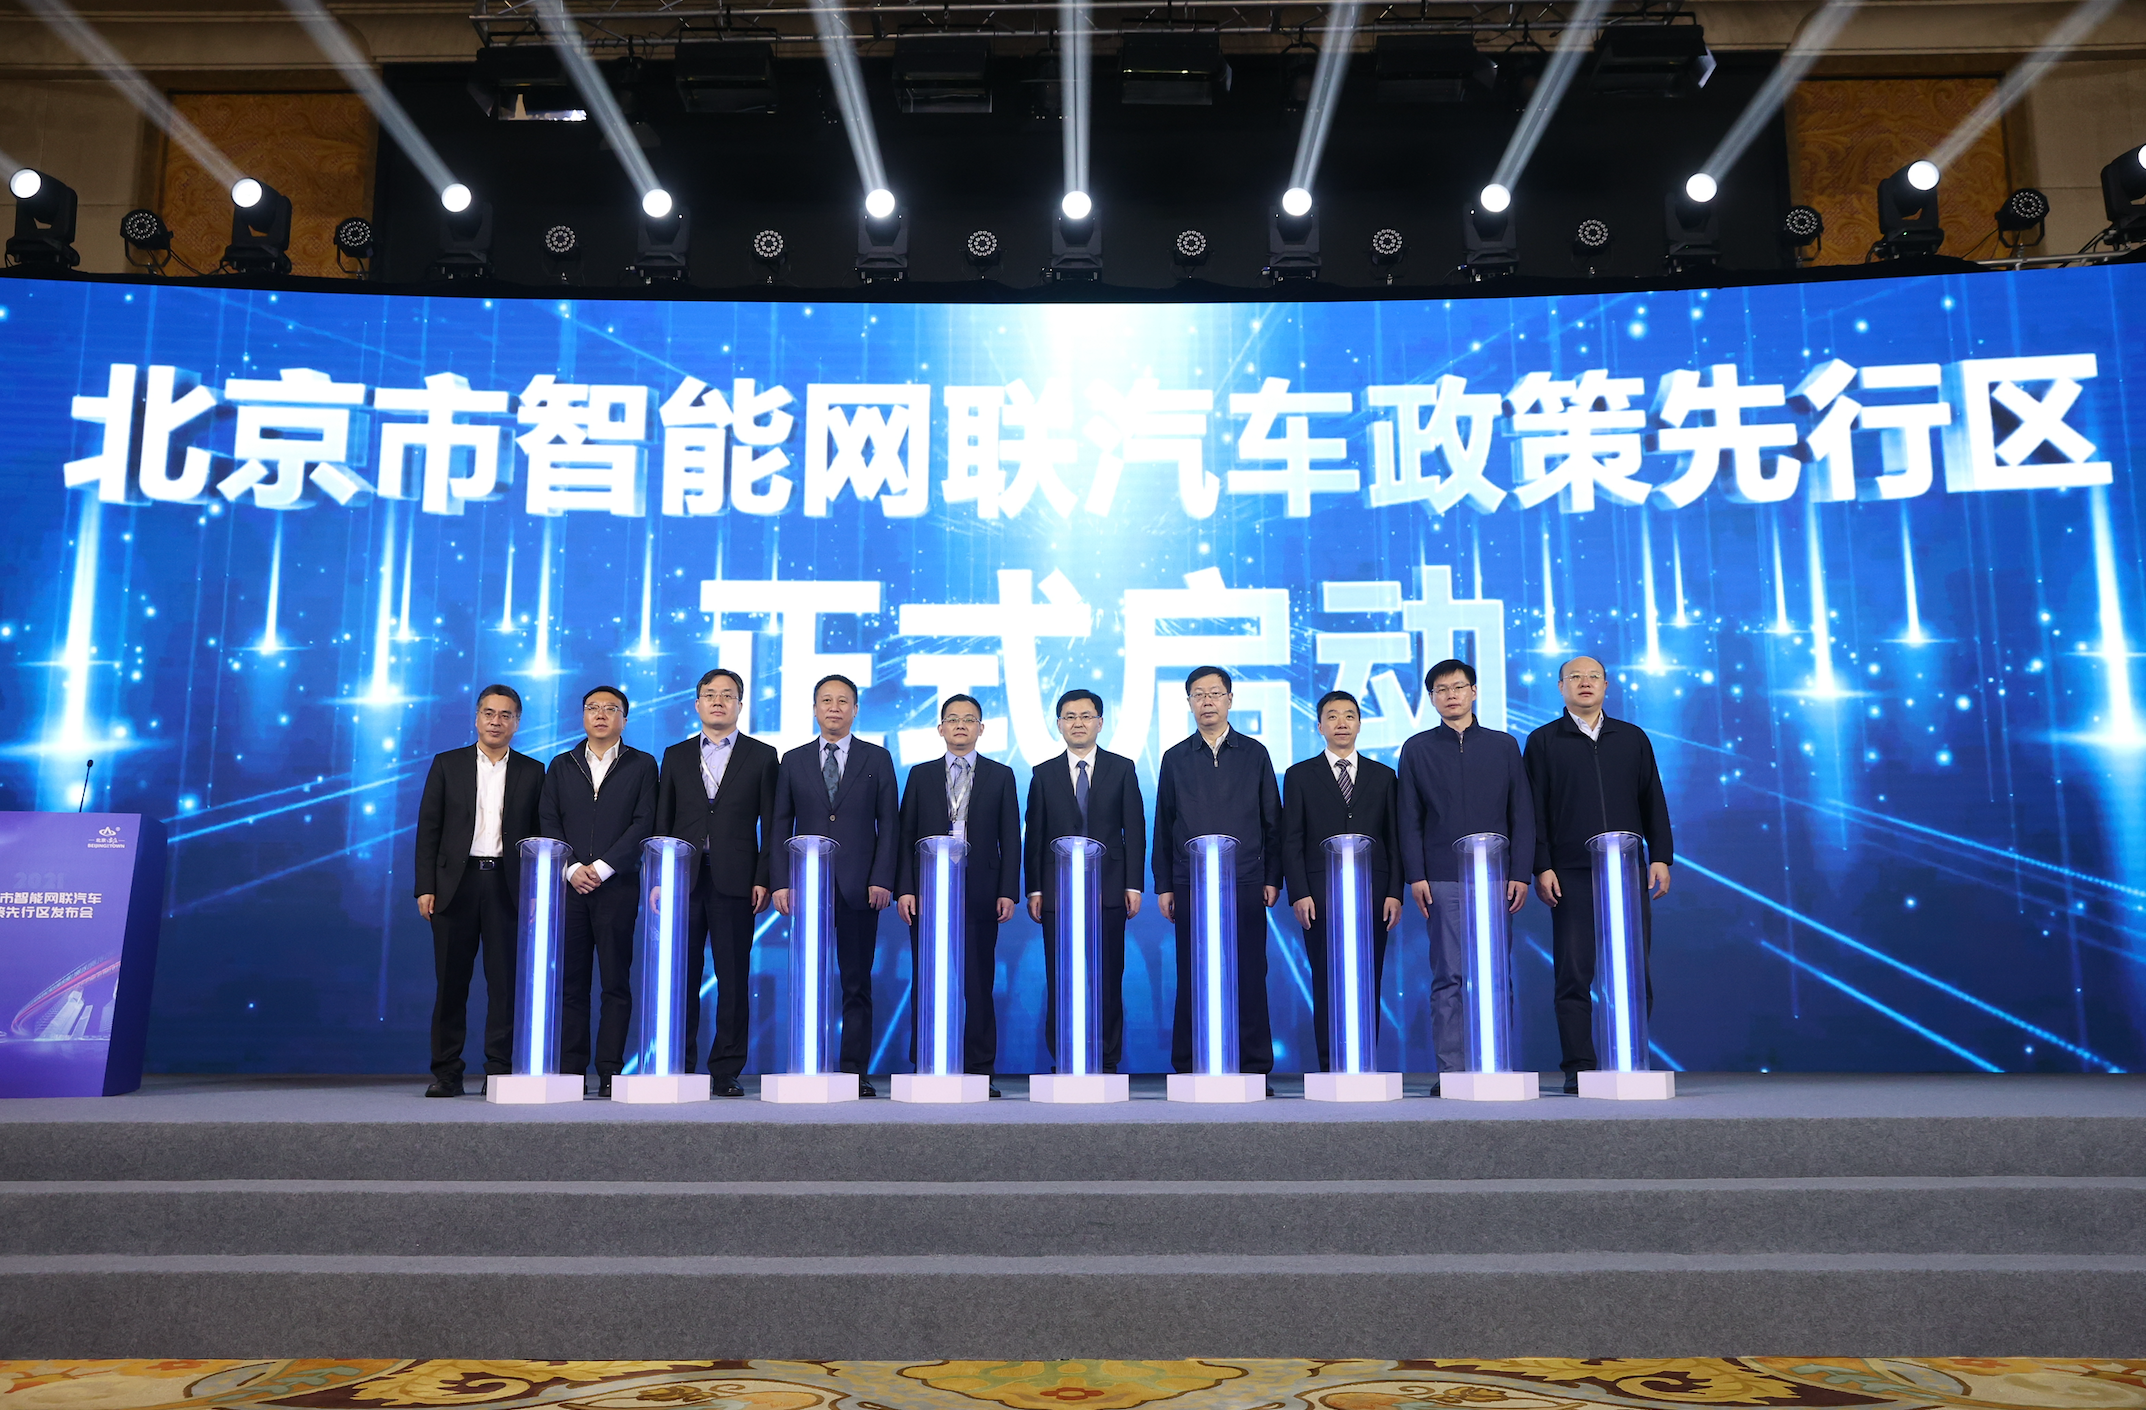 北京设立国内首个智能网联汽车政策先行区 构建适度超前的政策管理体系